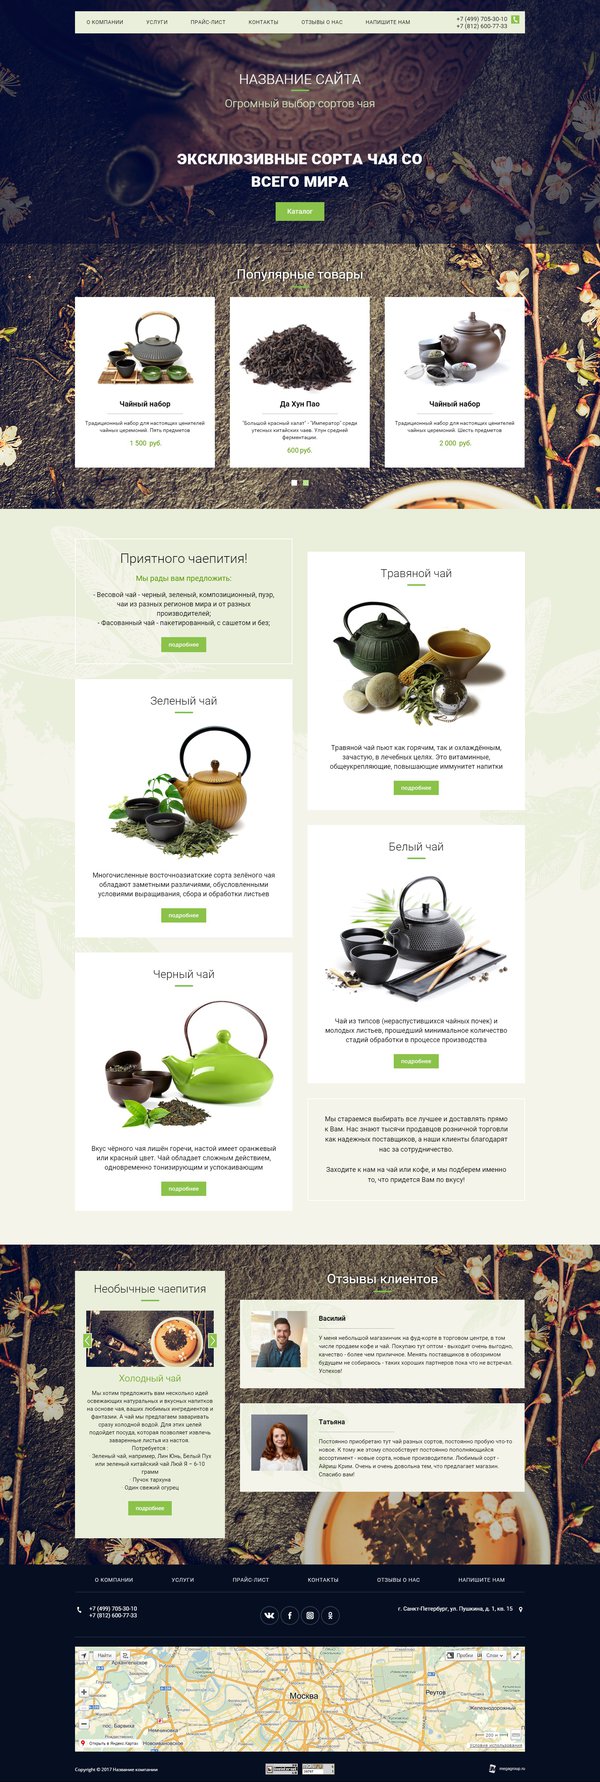 Готовый Сайт-Бизнес № 1883817 - Чай и чайная продукция (Десктопная версия)